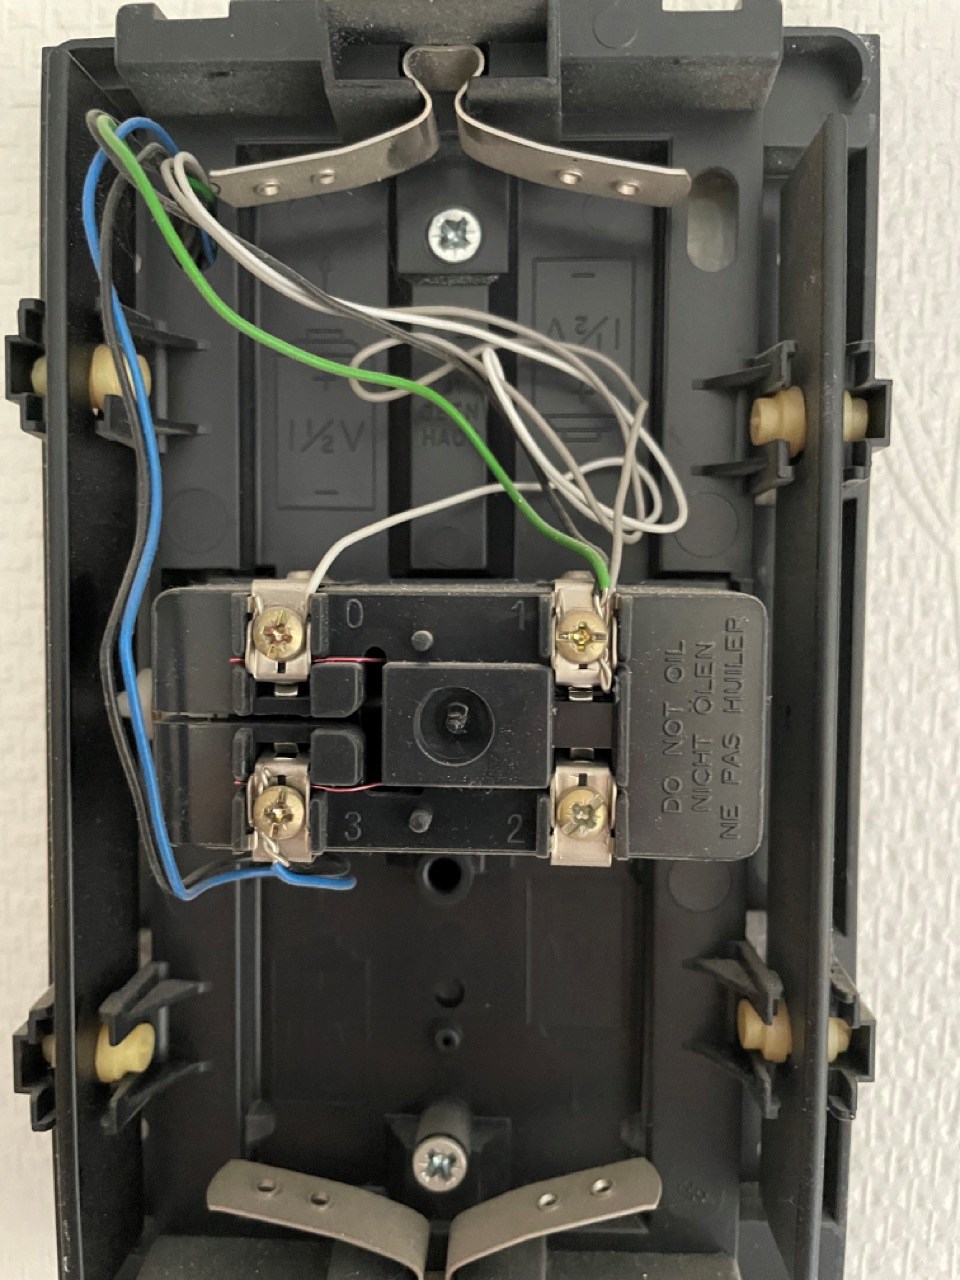 Installering av Ubiquiti G4 Doorbell i Friedland ringeklokke - IMG_5378 Large.jpeg - tbygger